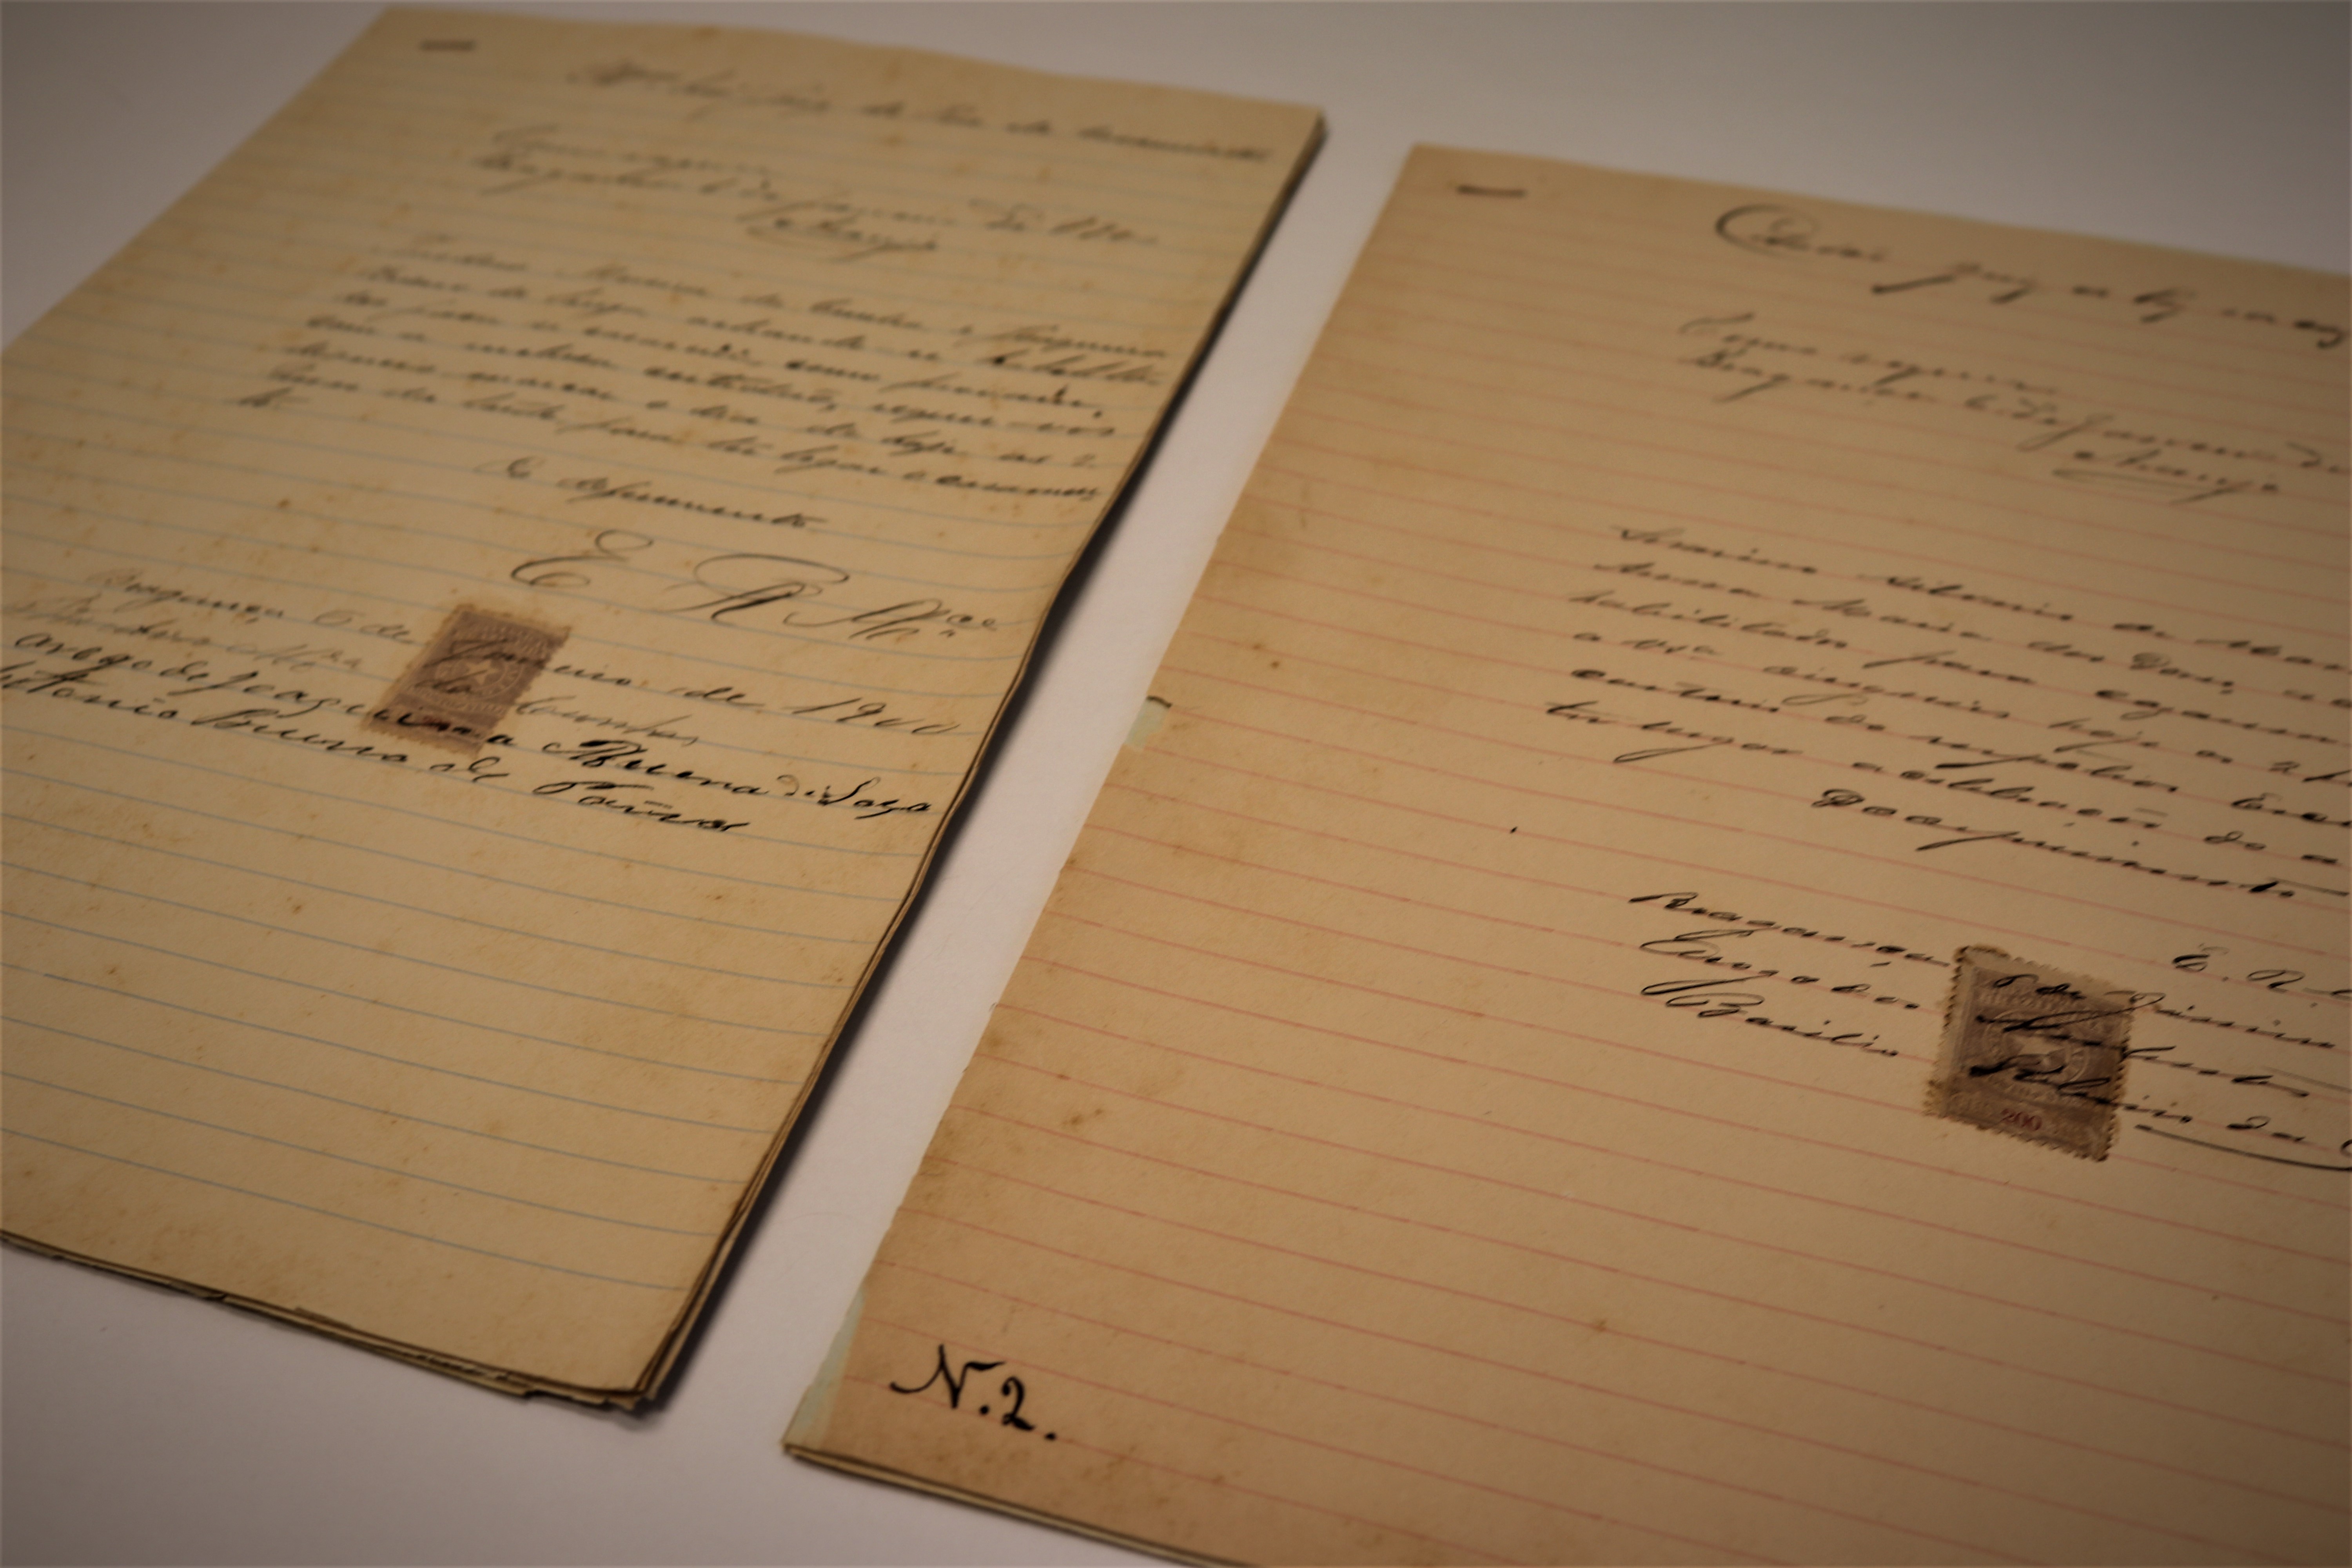 Coleção do Cartório de Registro Civil de Bragança Paulista (1891 a 1961)